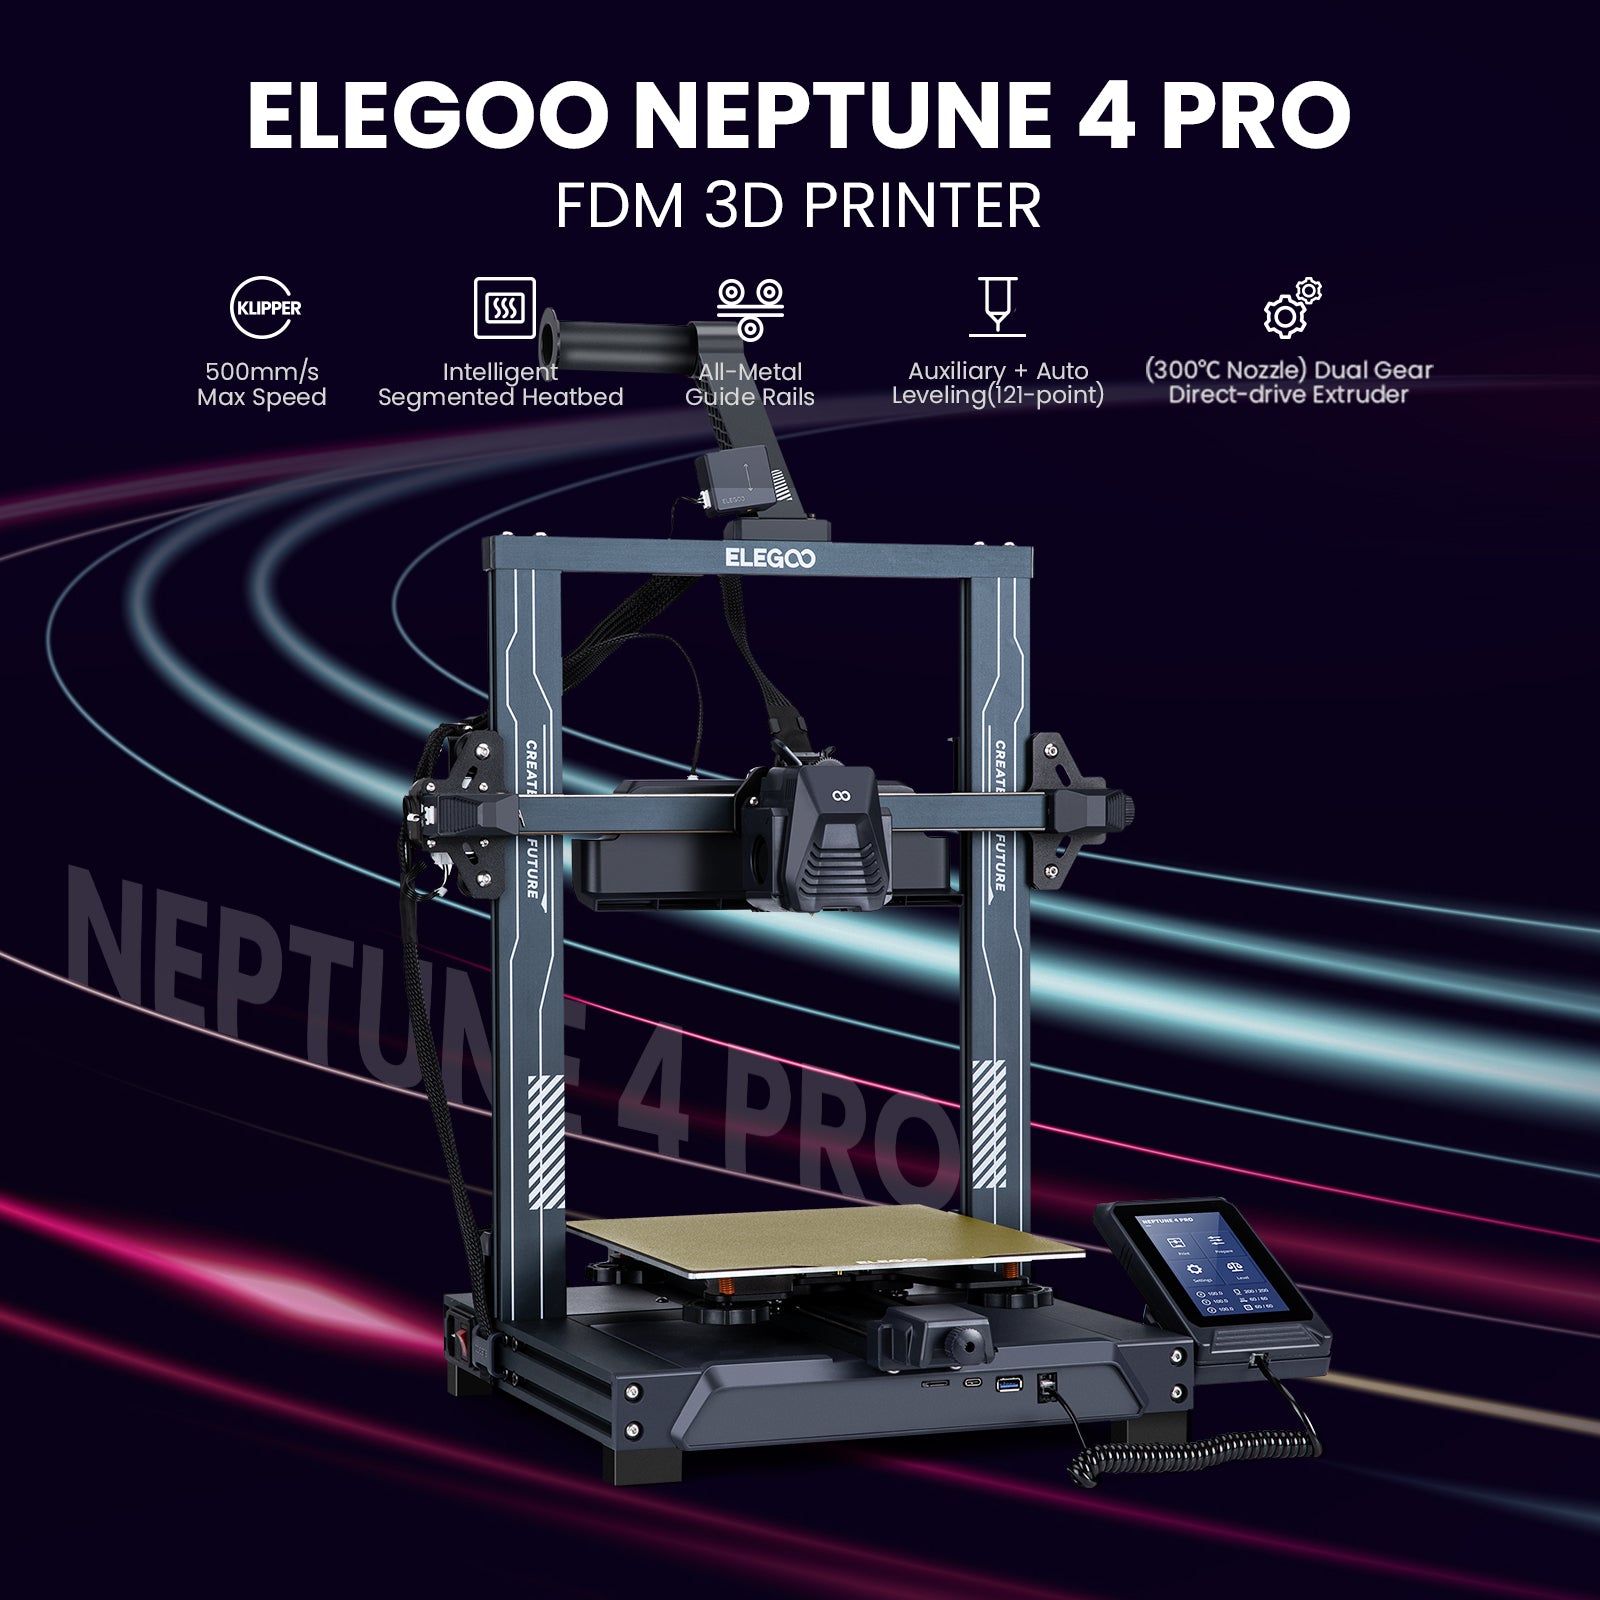 ELEGOO Neptune 3 Pro 3D Printer - protomont